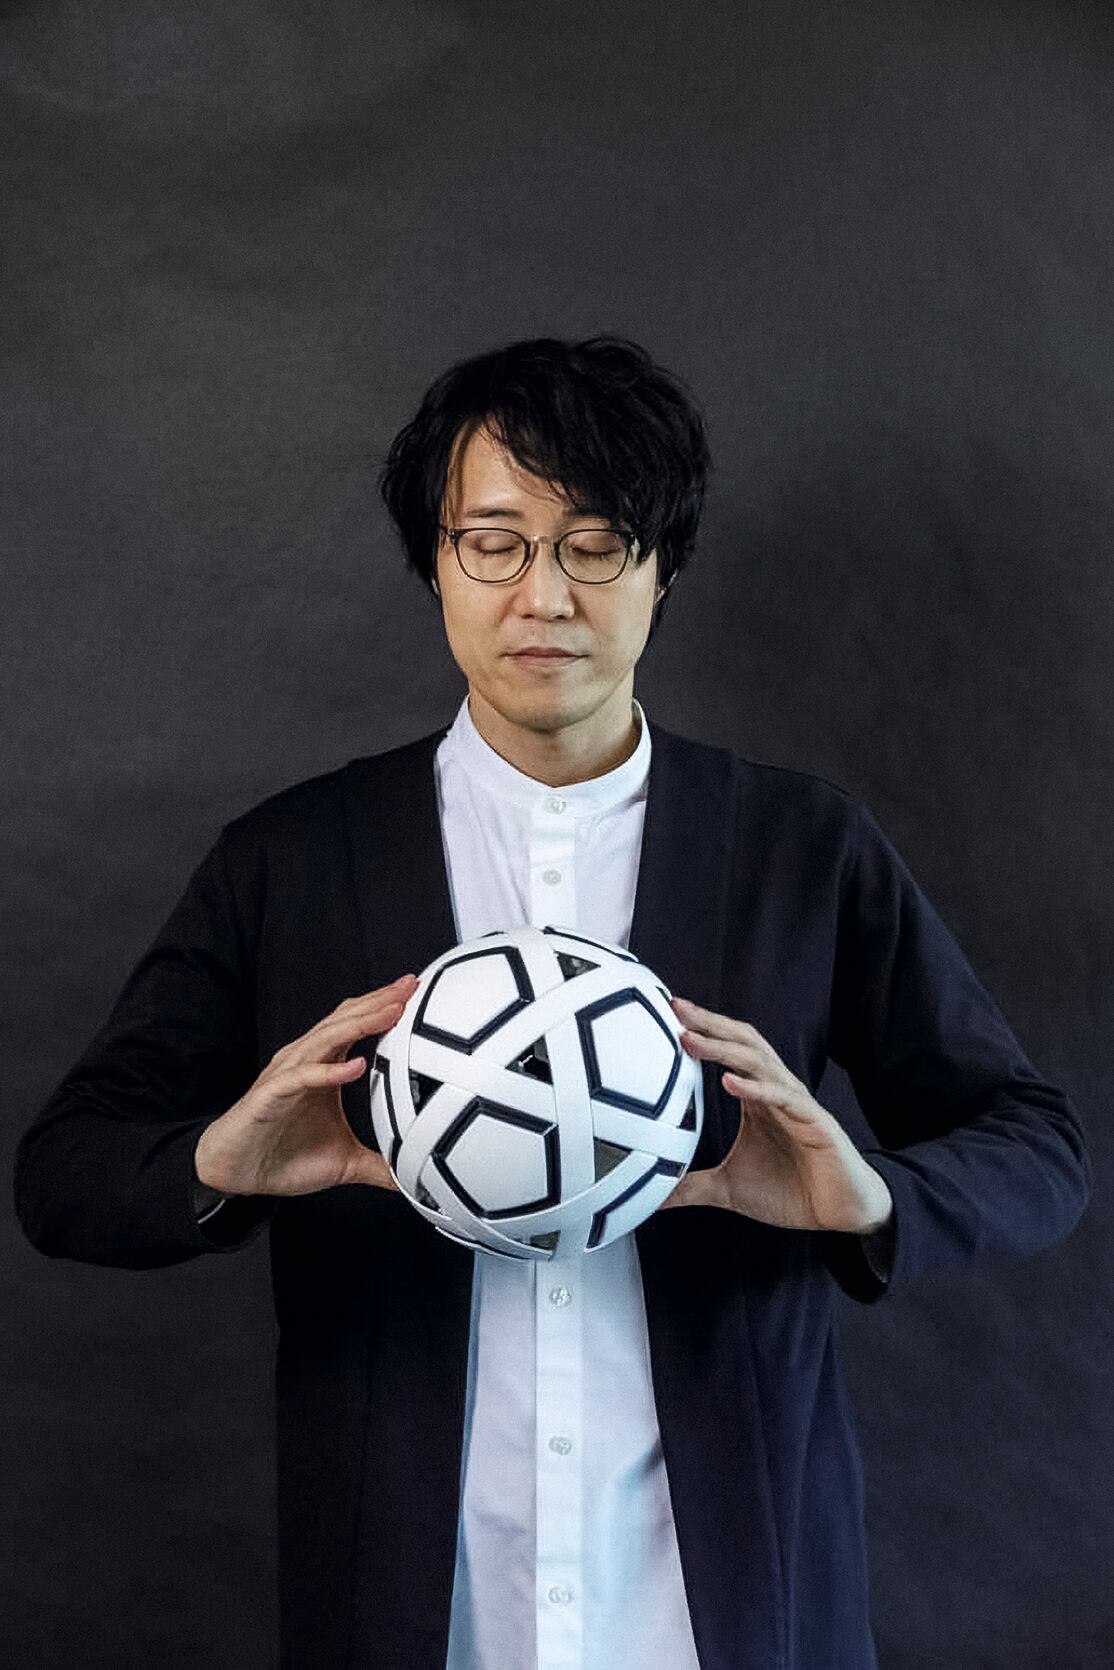 Sato sostiene el balón My Football Kit, compuesto de 54 piezas fáciles de armar y almacenar. Fue diseñado para popularizar el deporte en países pobres y varias empresas japonesas lo donan a escuelas, clubes e instituciones.